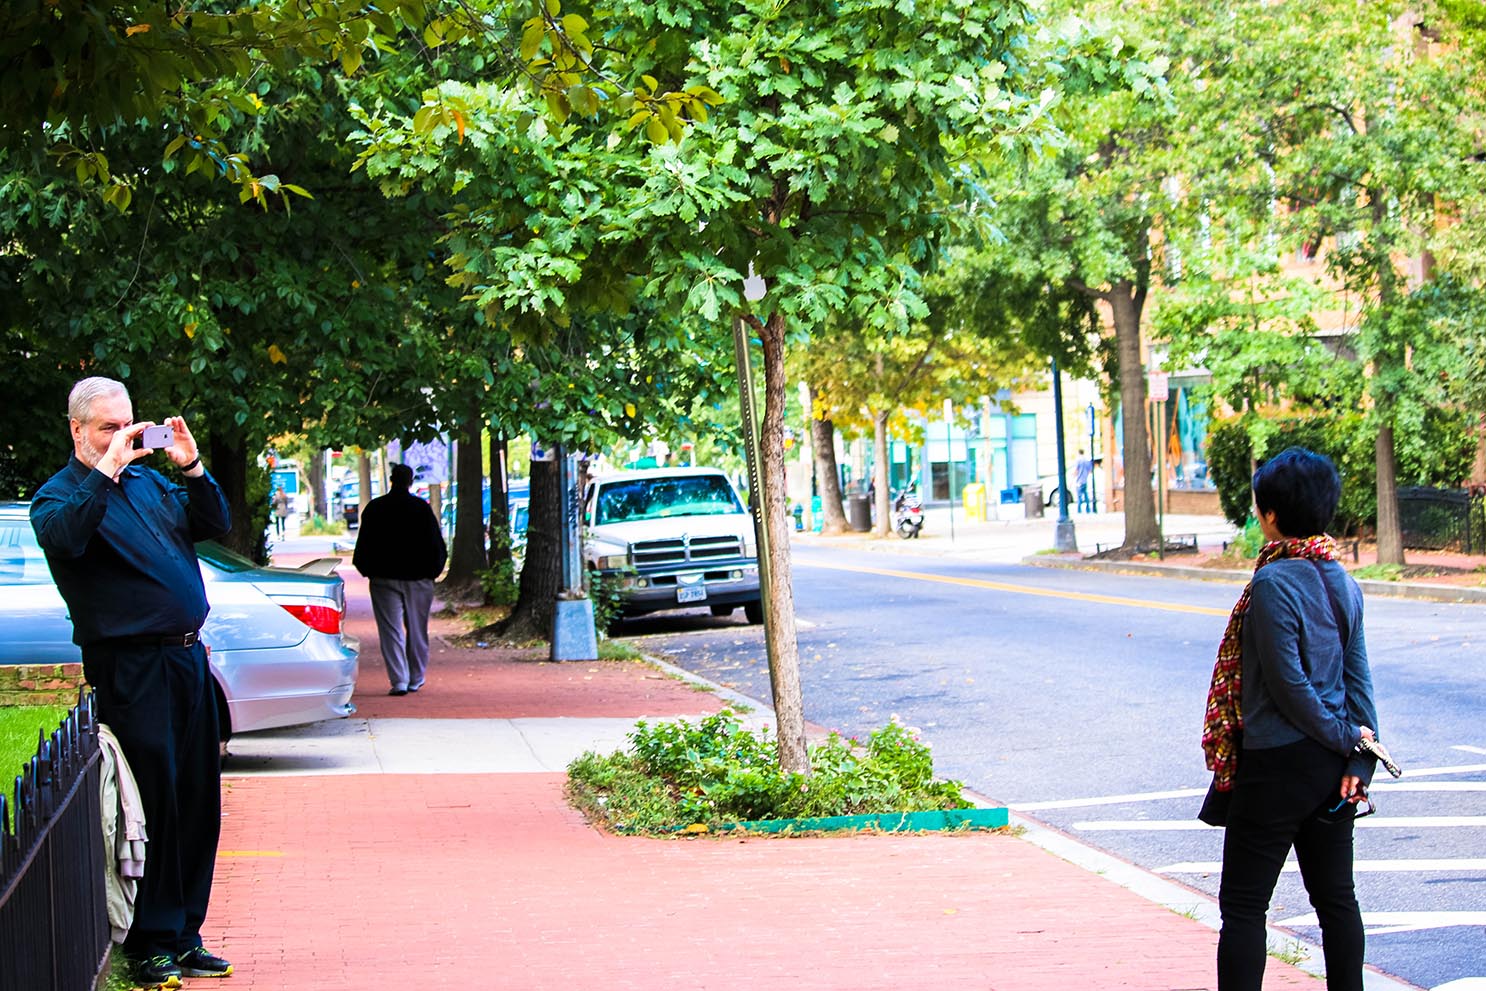 People taking photos in Logan Circle, Washington, D.C.